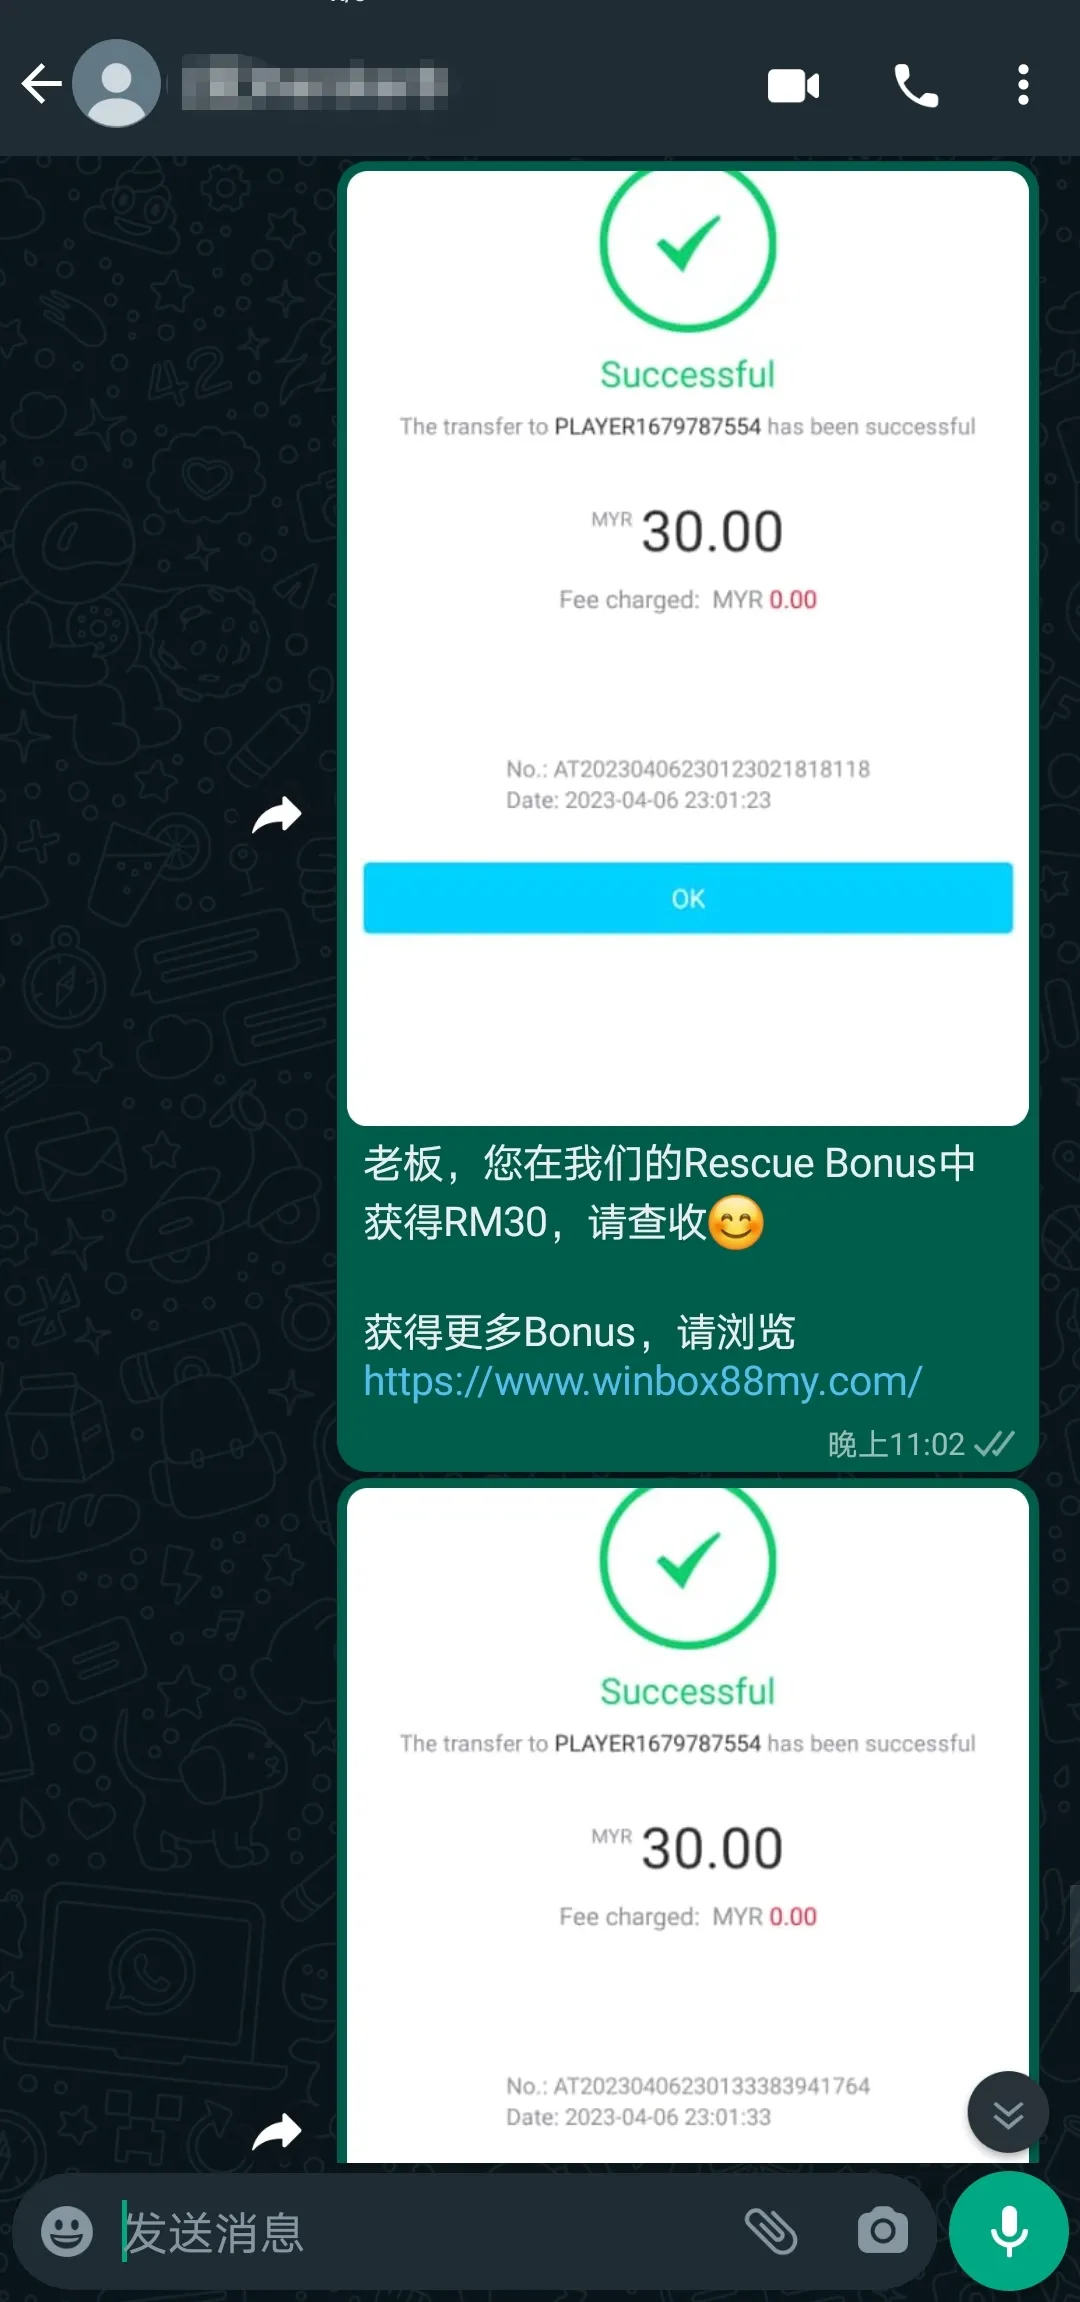 winbox rescue bonus past winner screenshot 76